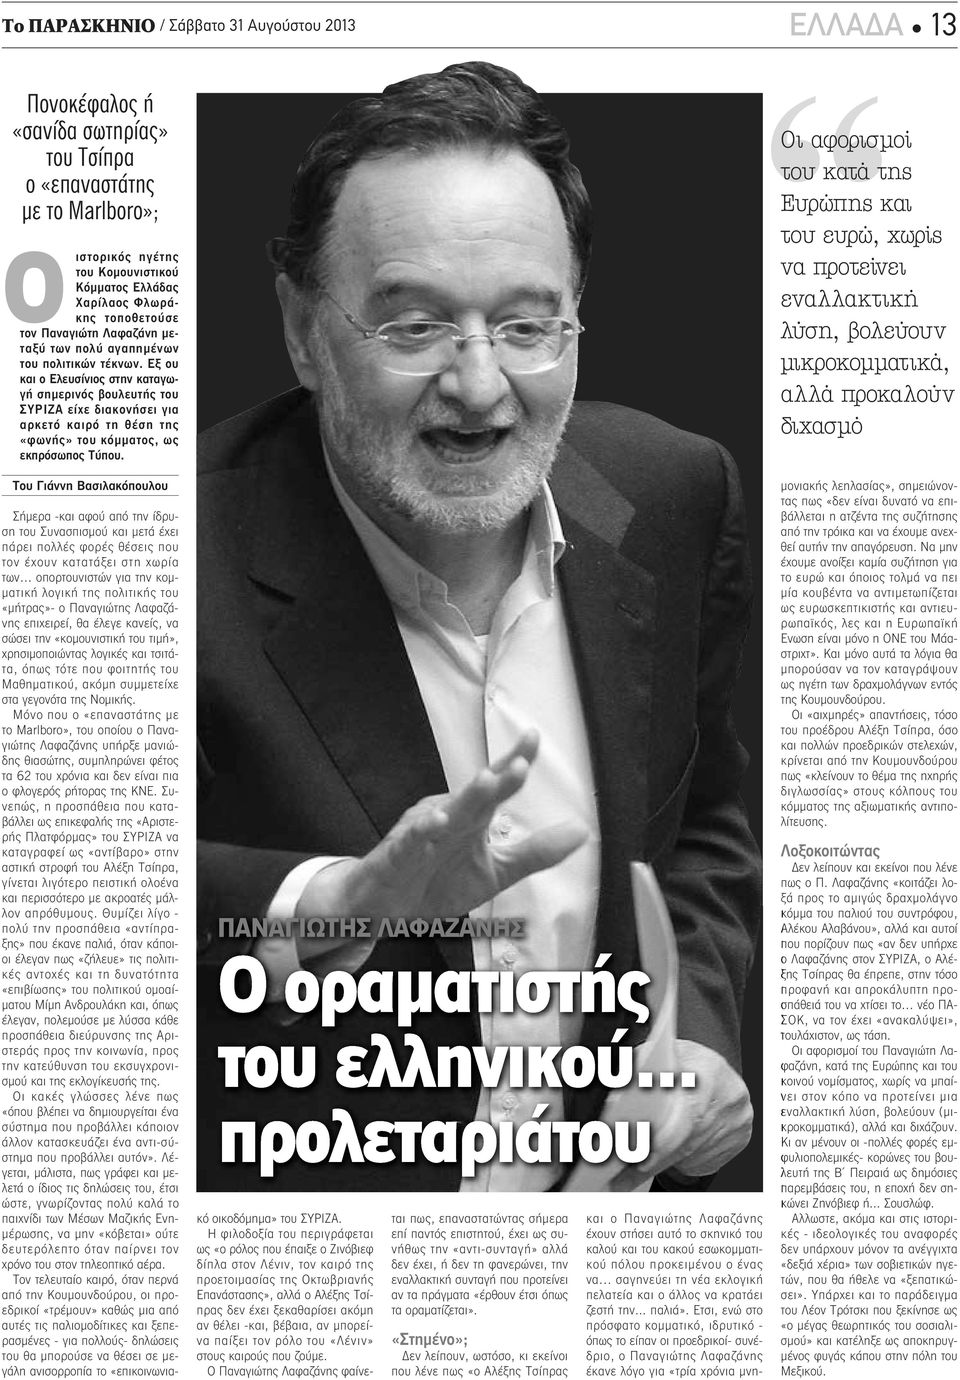 Εξ ου και ο Ελευσίνιος στην καταγωγή σημερινός βουλευτής του ΣΥΡΙΖΑ είχε διακονήσει για αρκετό καιρό τη θέση της «φωνής» του κόμματος, ως εκπρόσωπος Τύπου.